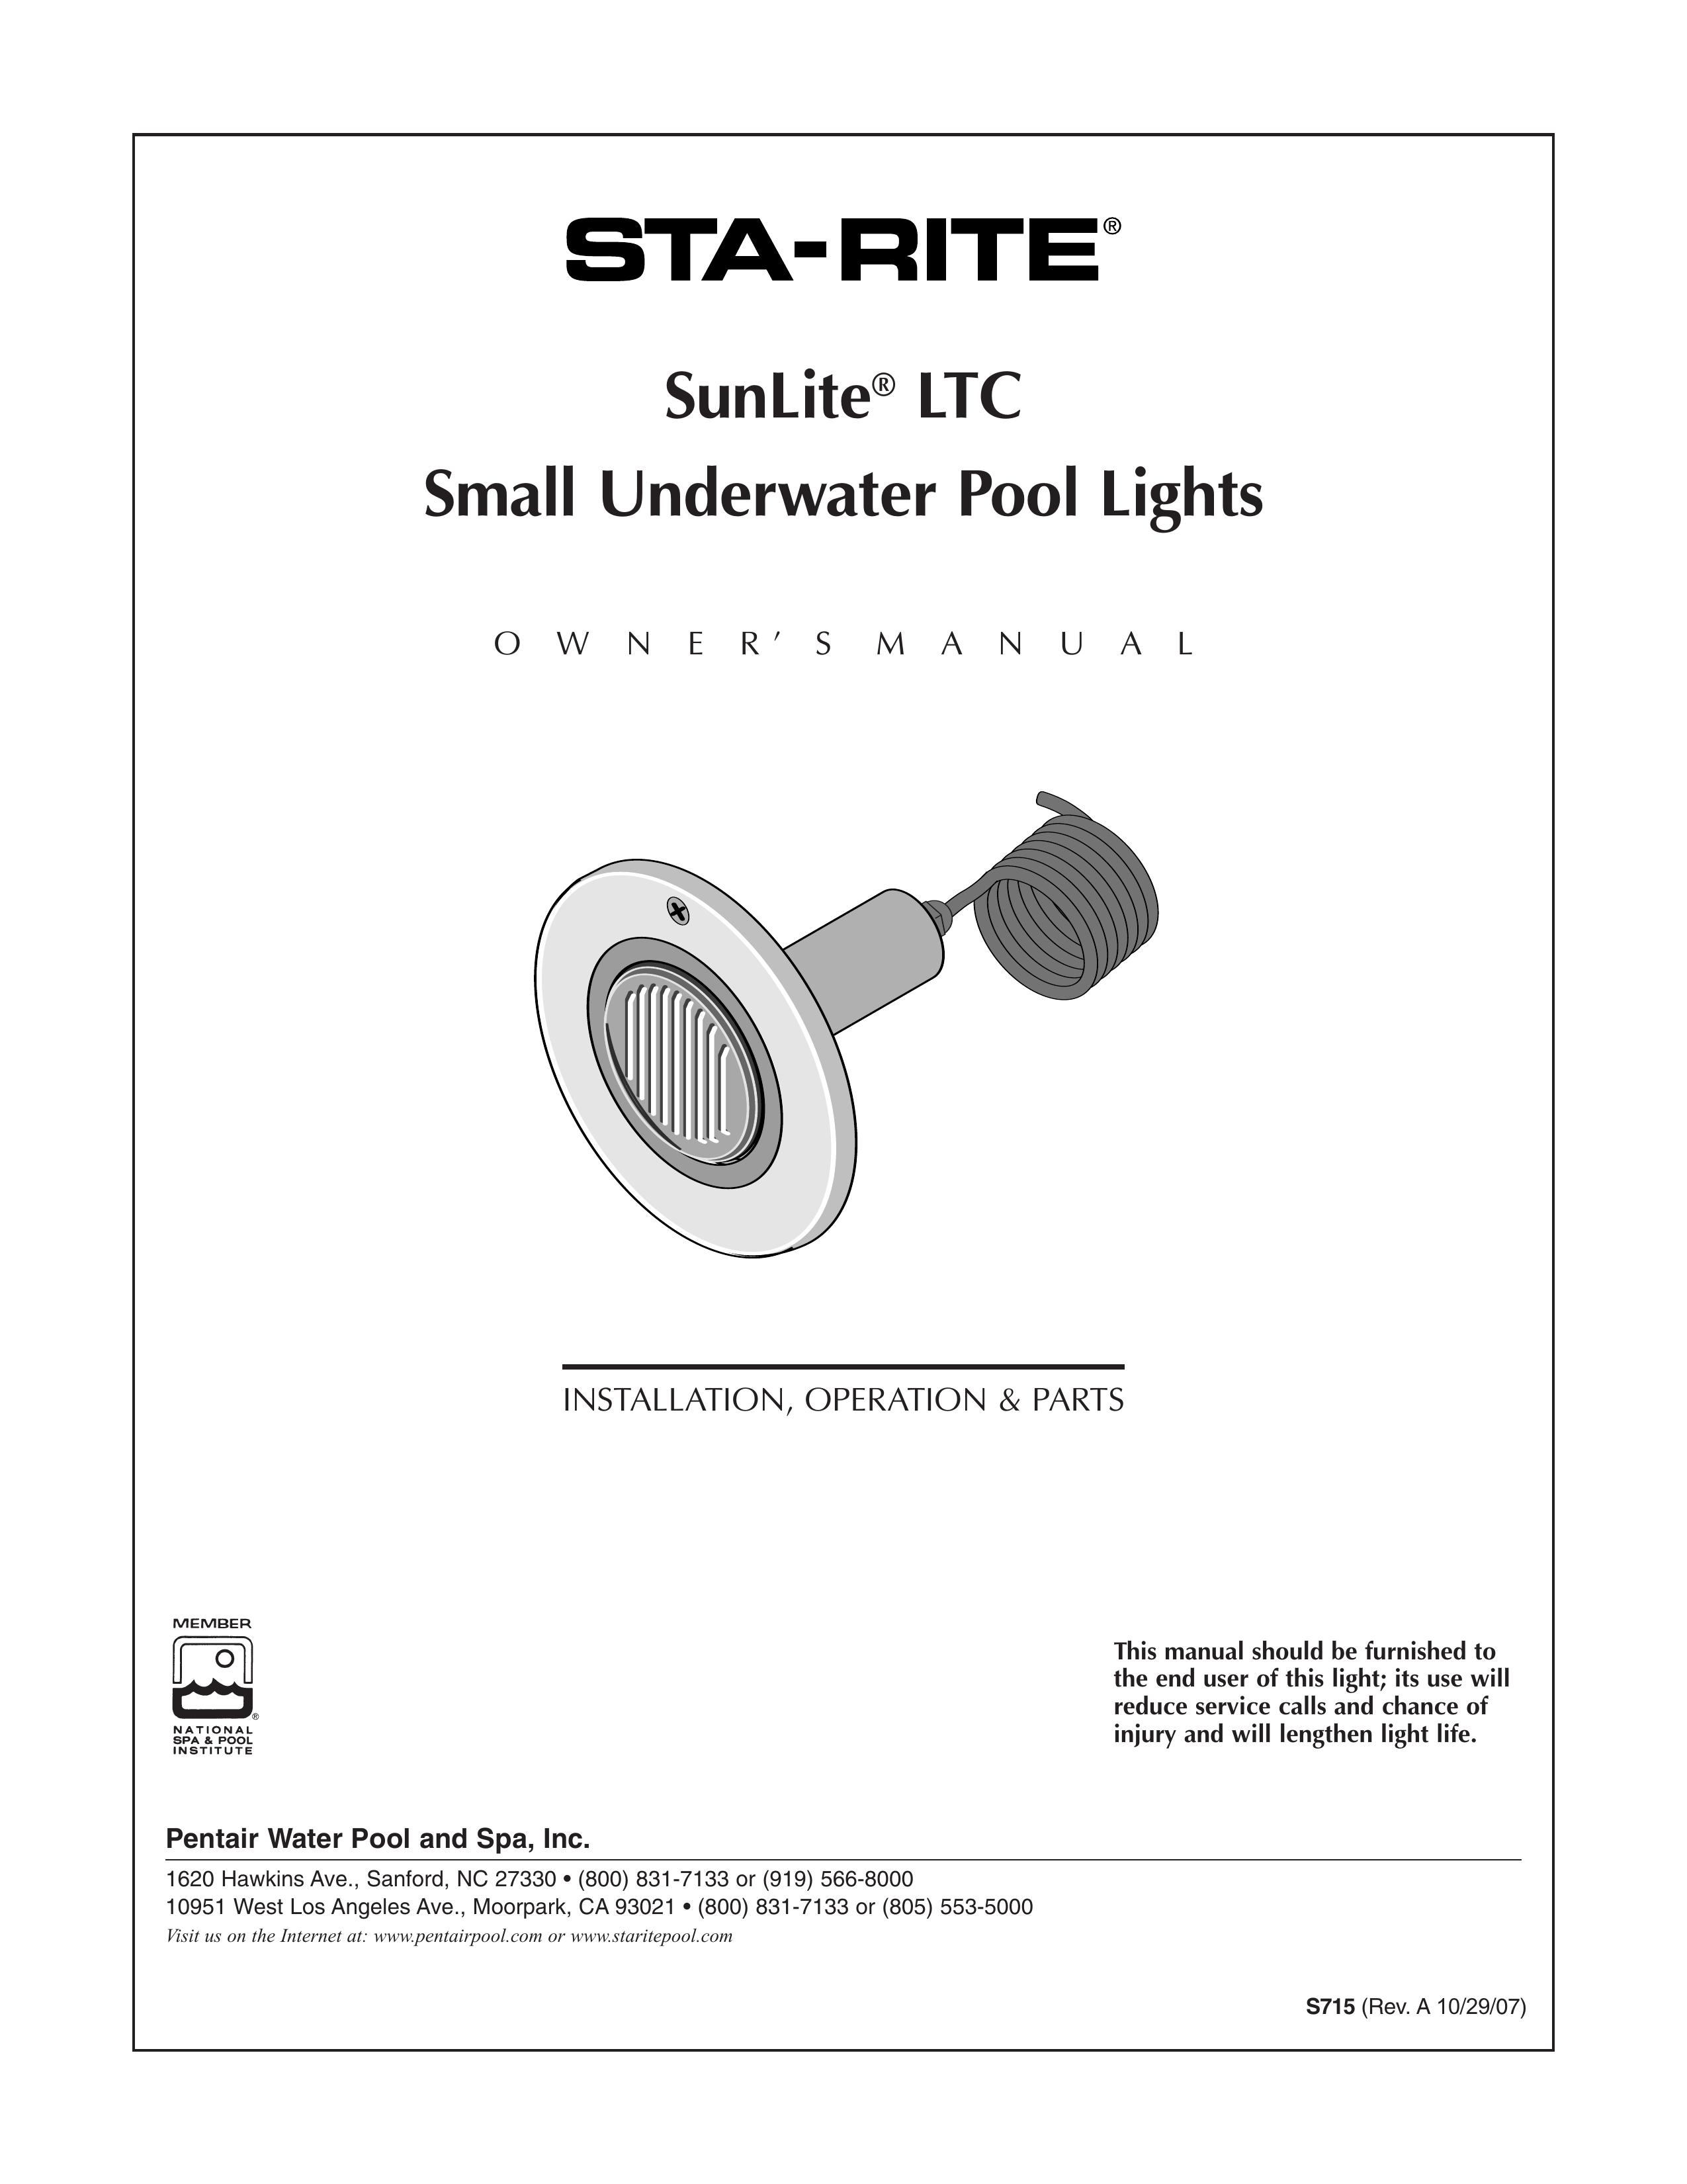 Pentair SunLite LTC Swimming Pool User Manual